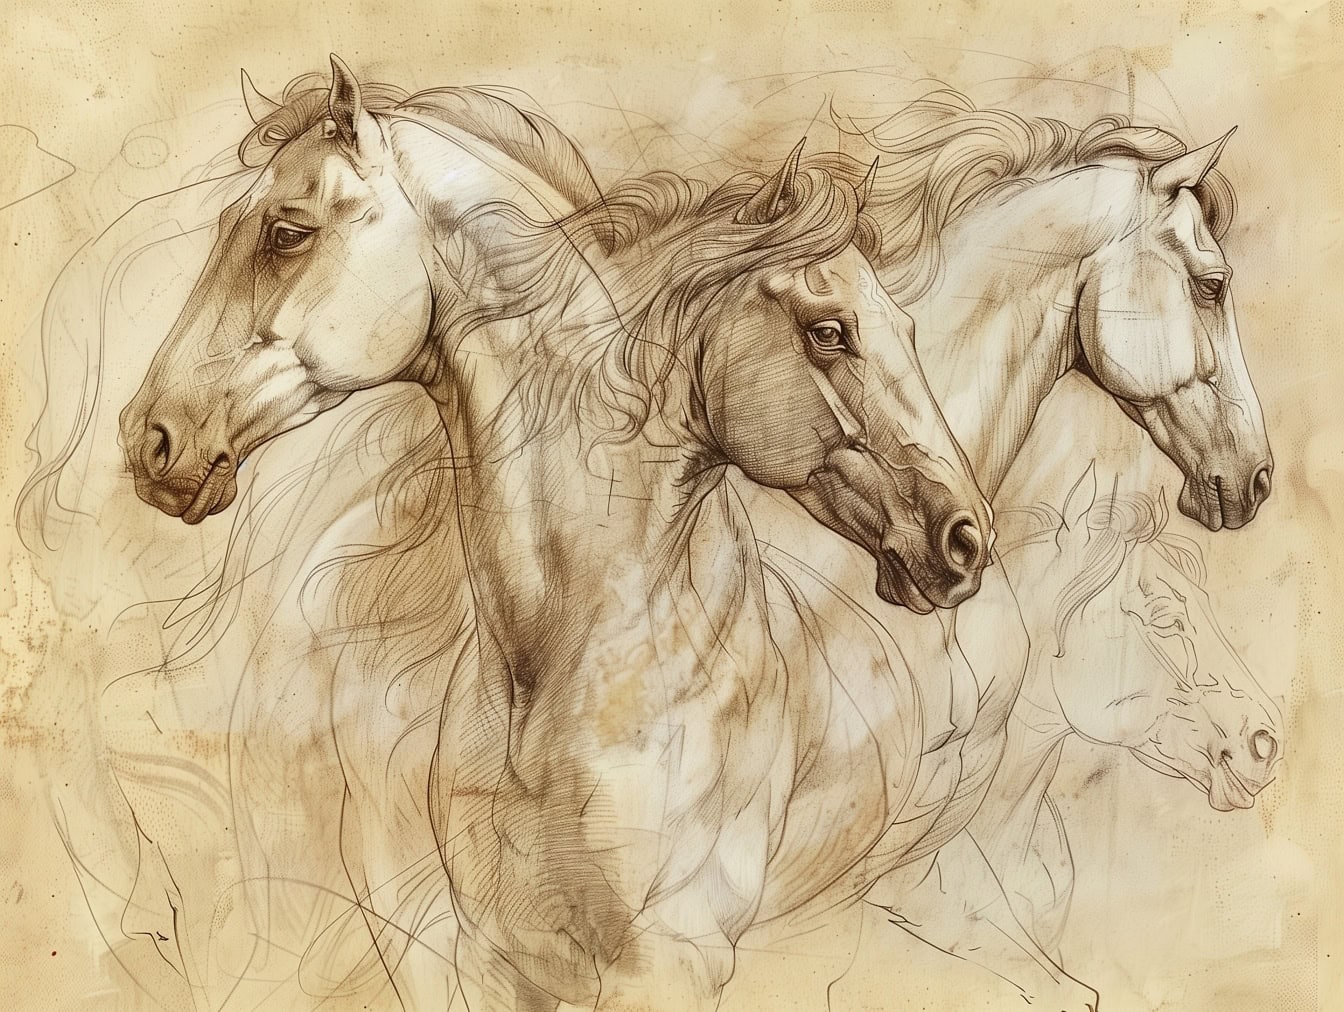 En ufærdig arbejdsskitsetegning af flere heste på falmet gulbrunt papir, der minder om kunstværket fra en middelalderlig kunstner